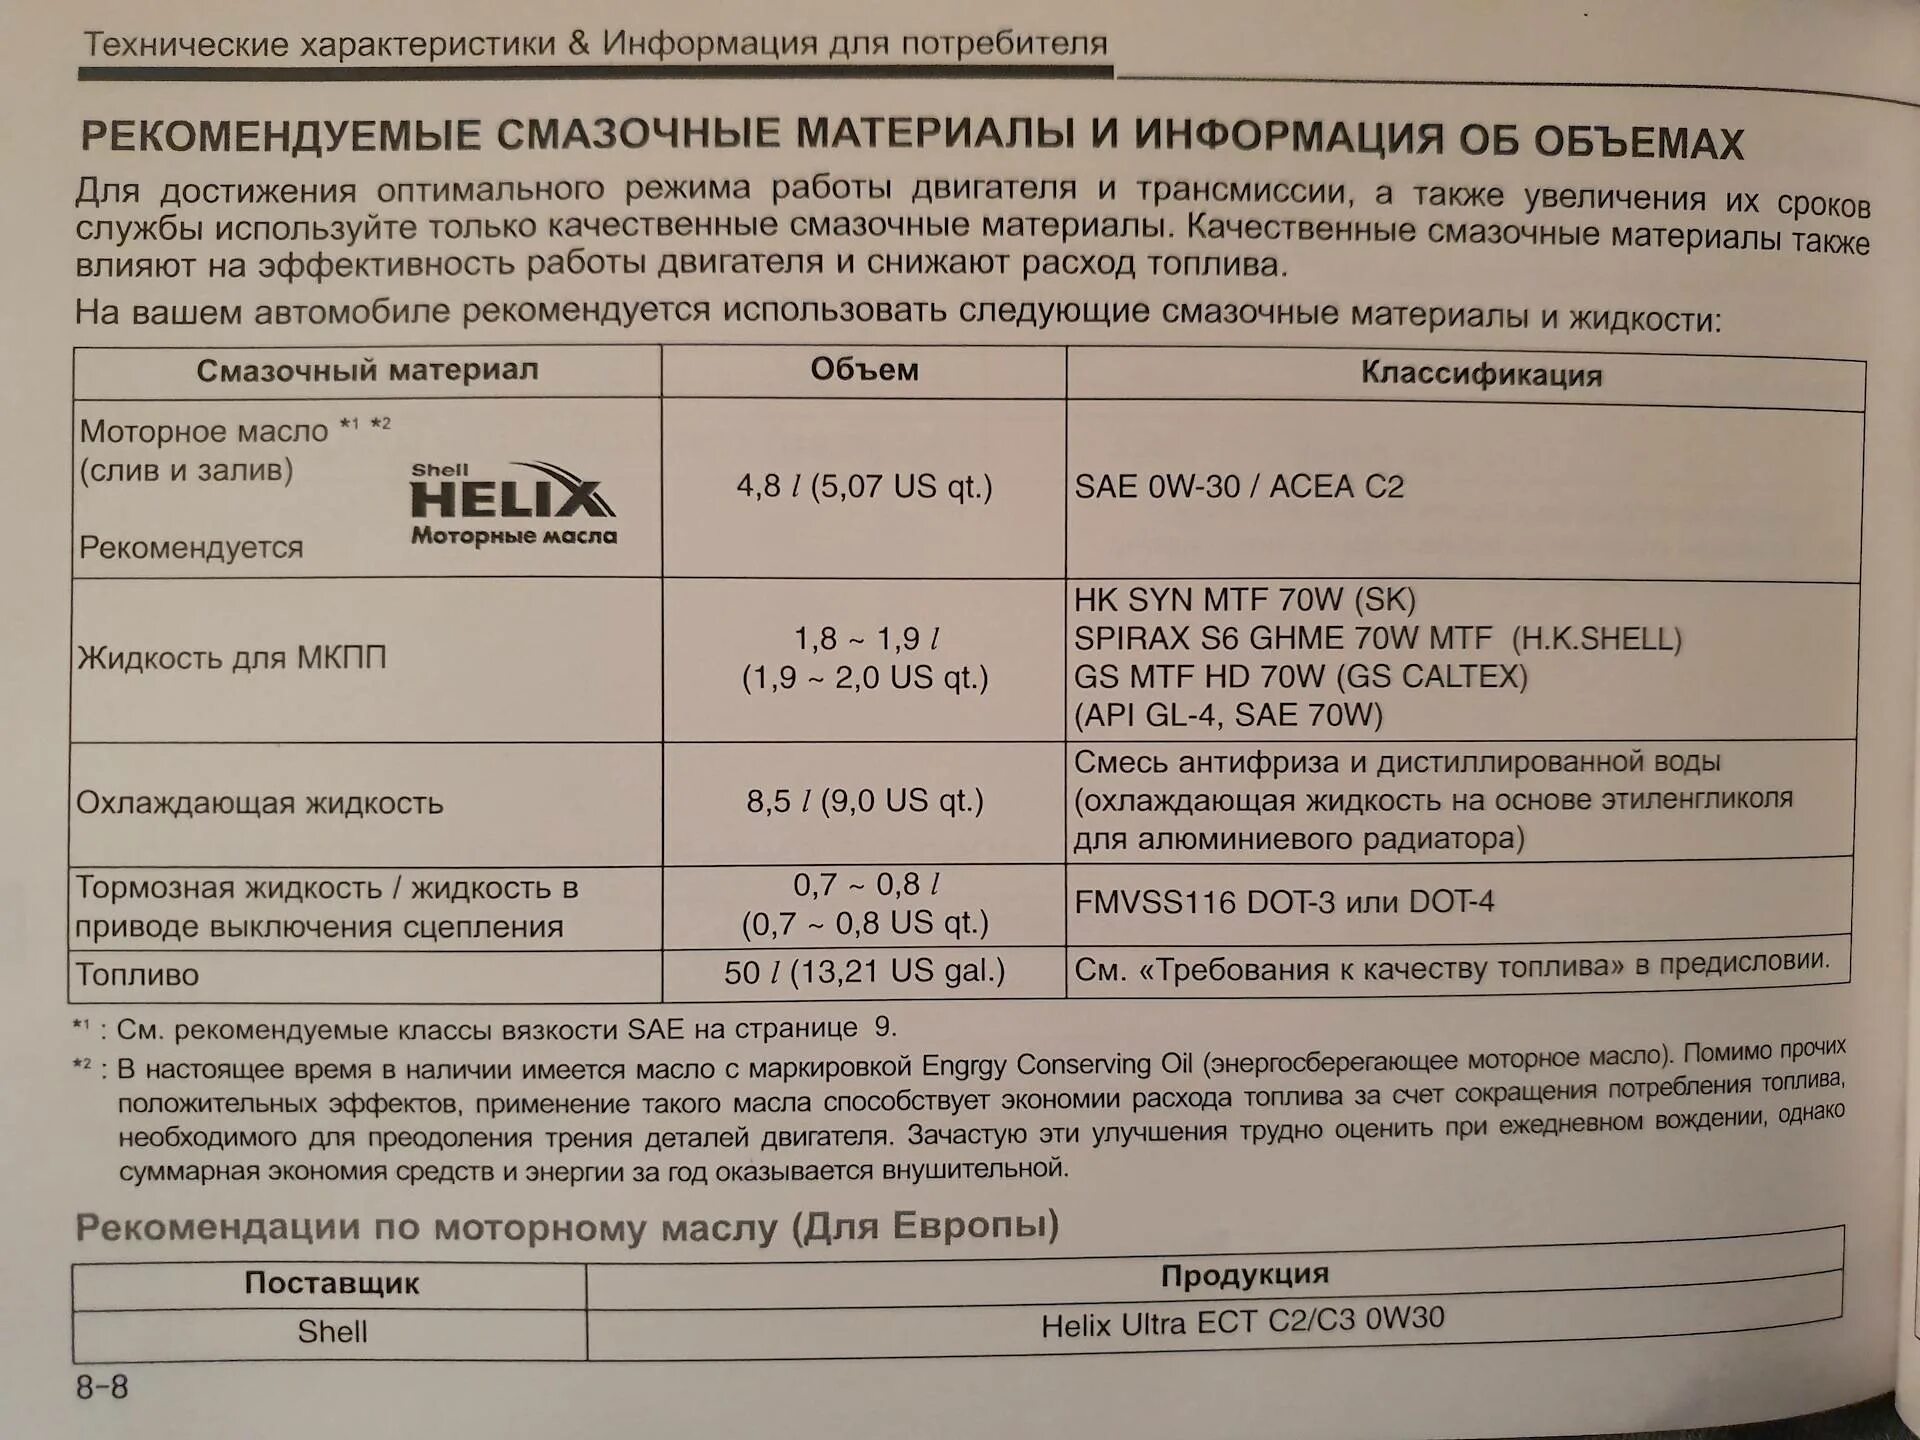 Допуски масла для Хендай Солярис 1.6. Solaris Hyundai 2015 допуски масла 1,6. Допуски моторного масла Хендай i30 1,6. Solaris 1.6 масло в двигатель допуски. Хендай солярис рекомендованные моторные масла